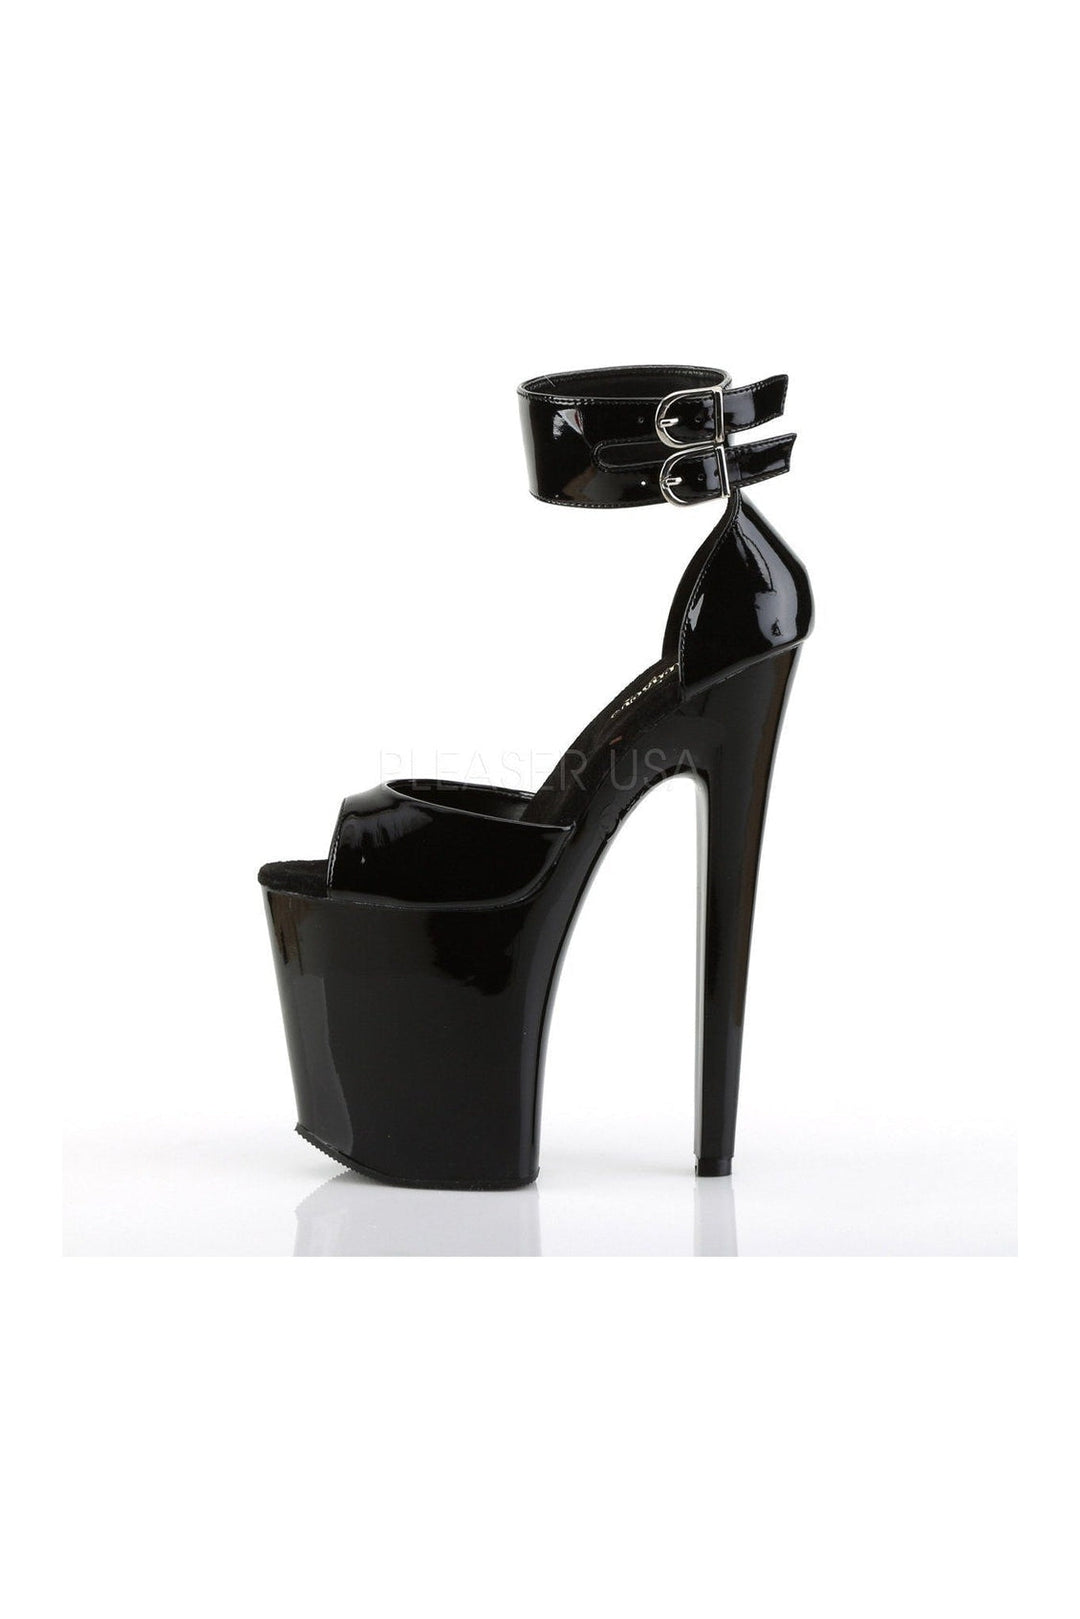 XTREME-875 Platform Sandal | Black Patent-Pleaser-Sandals-SEXYSHOES.COM